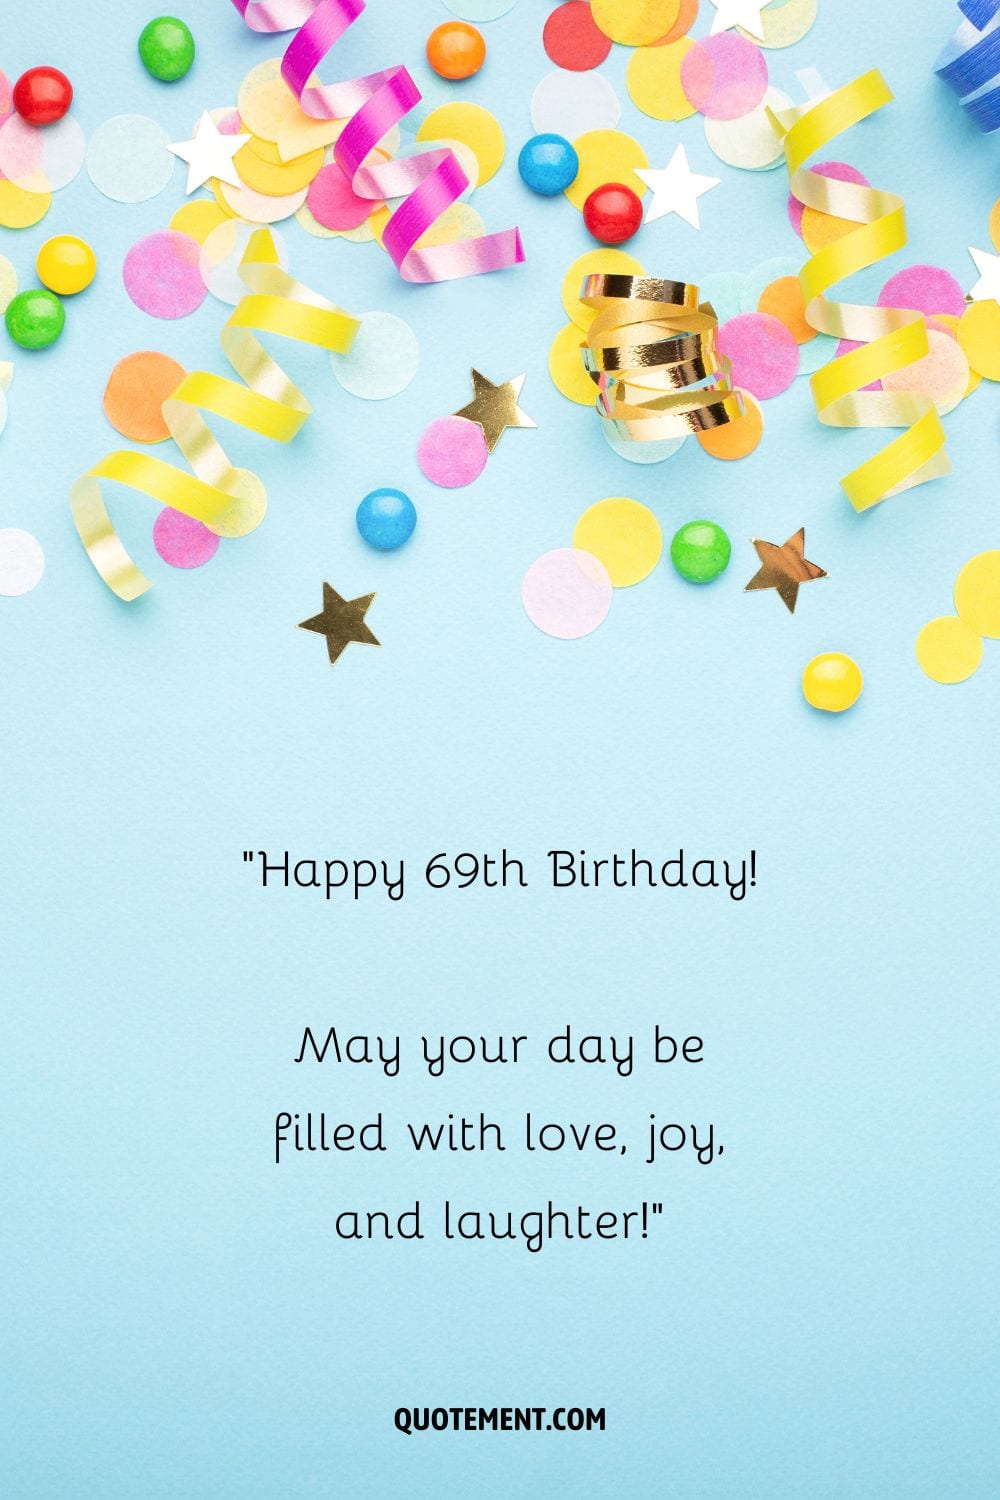 ¡Feliz 69 cumpleaños! ¡Que tu día esté lleno de amor, alegría y risas!